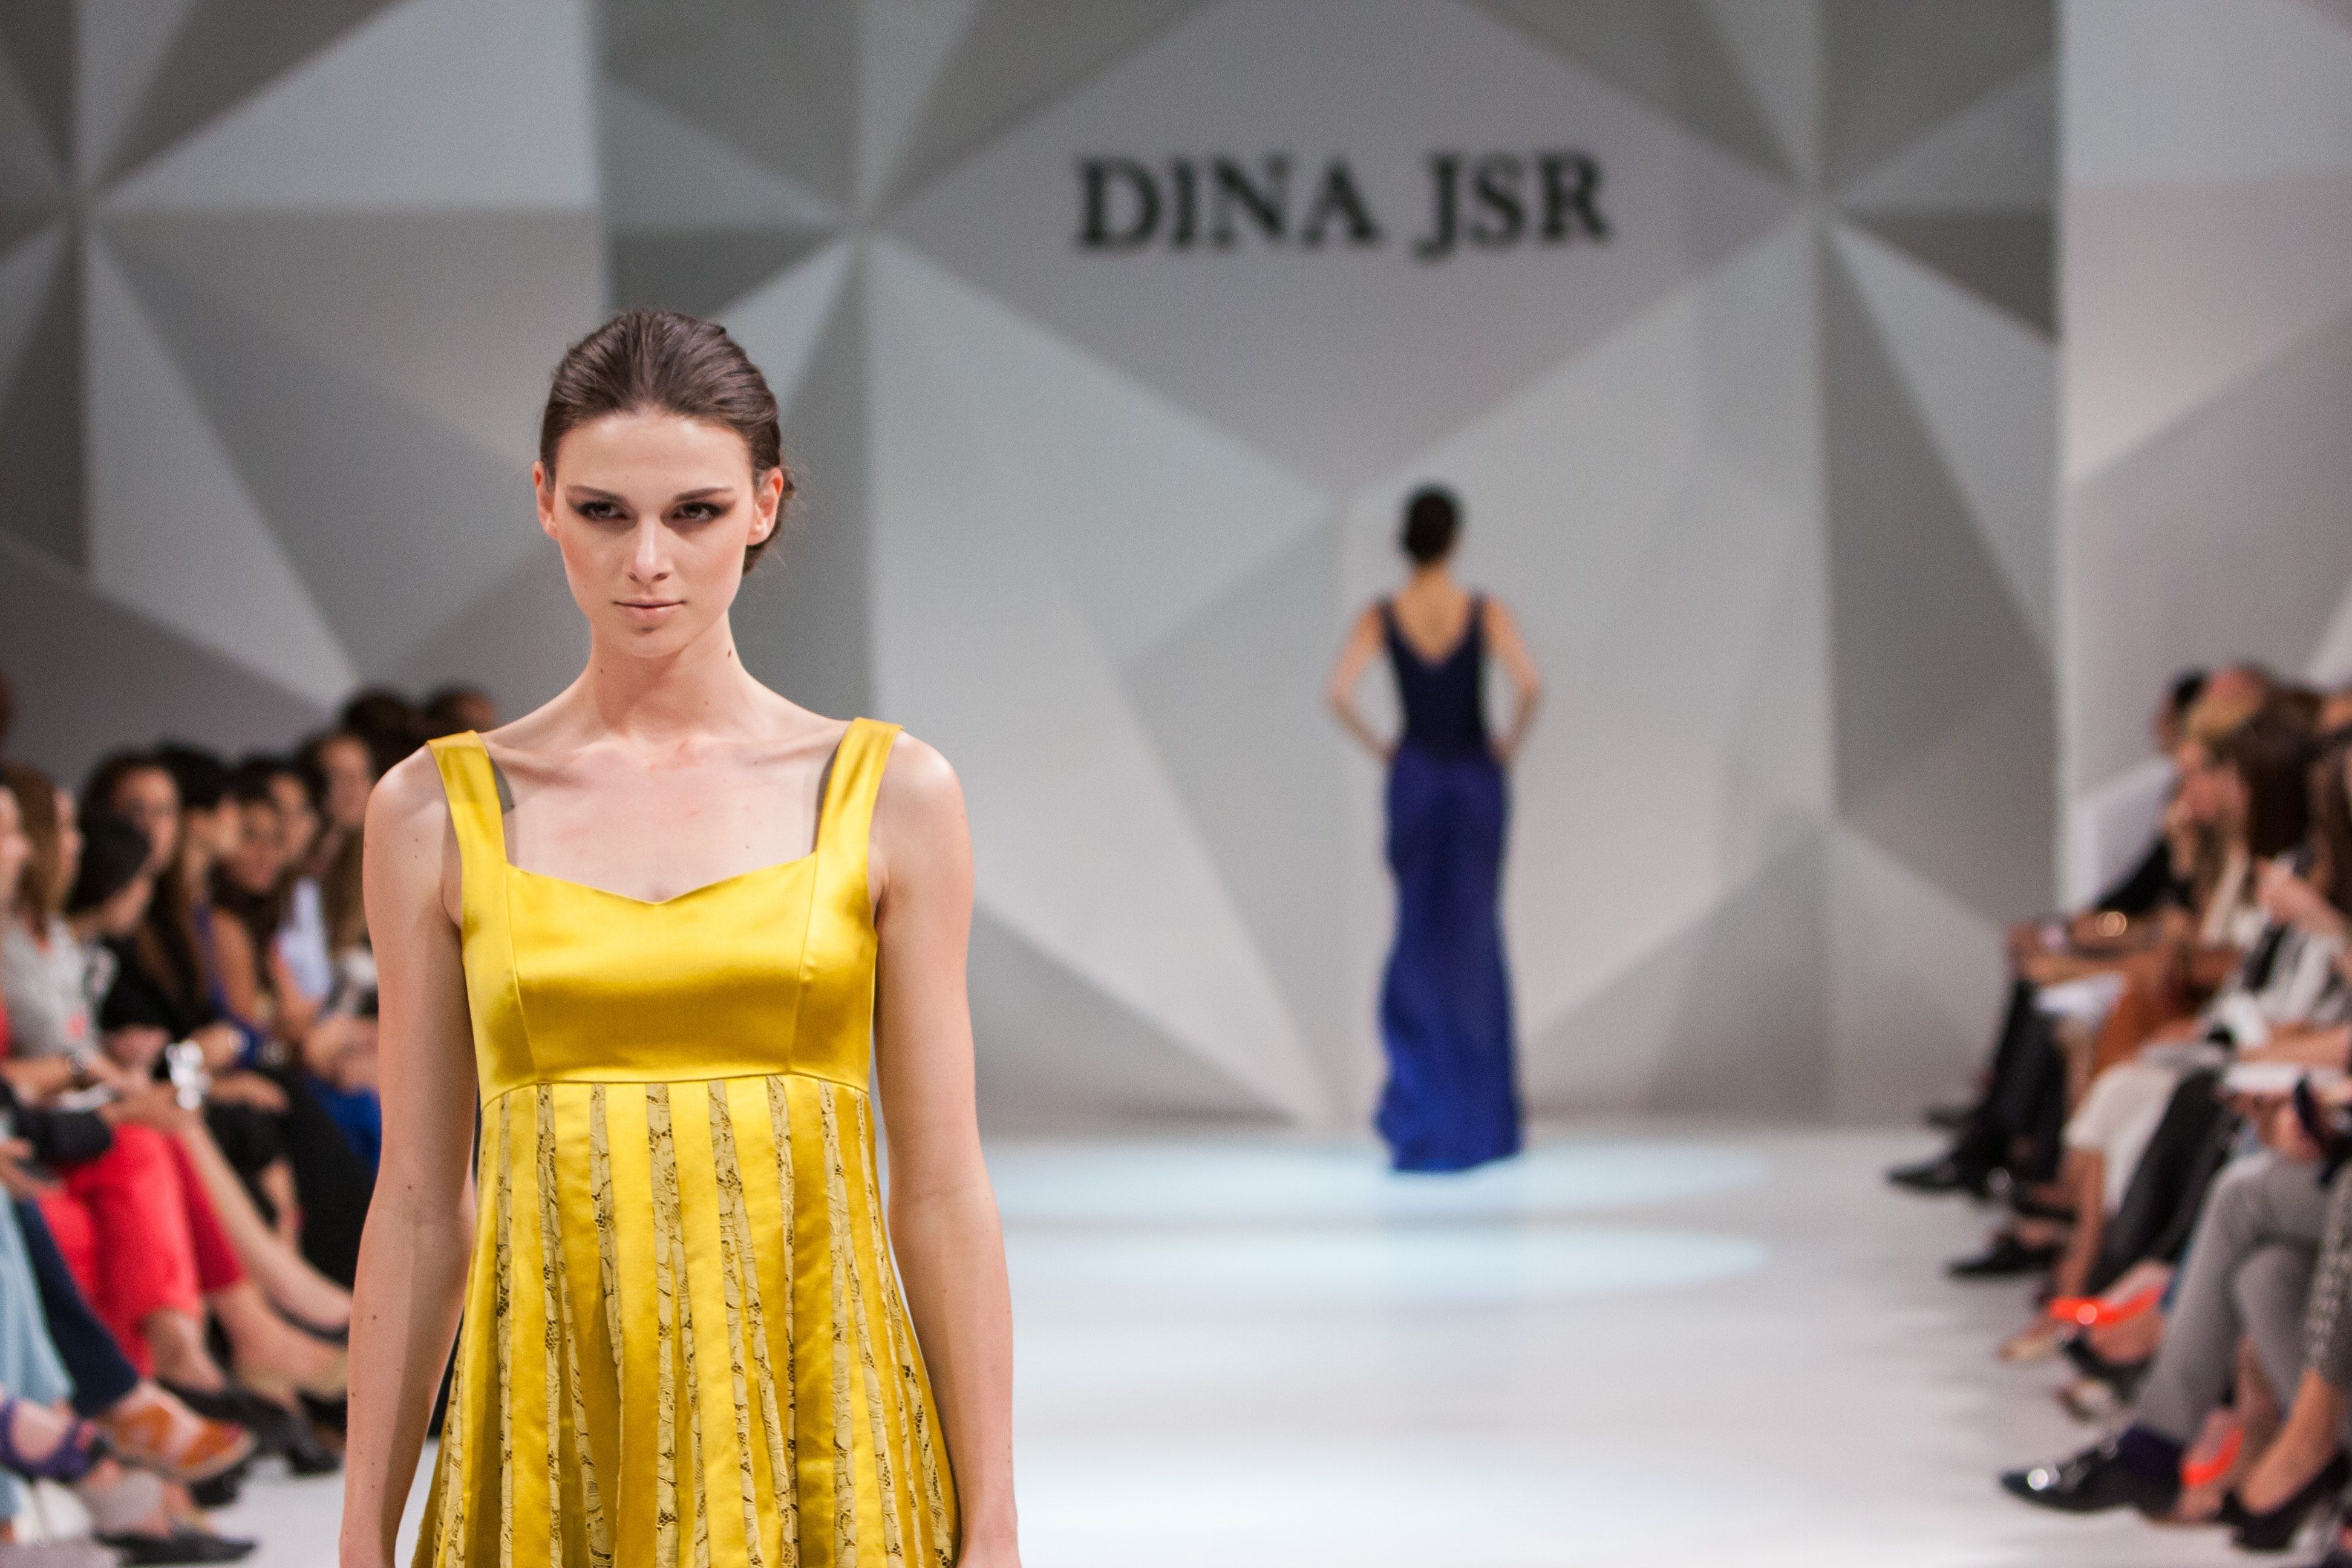 Women Walking on Catwalk on Dina Jsr Modeling · Free